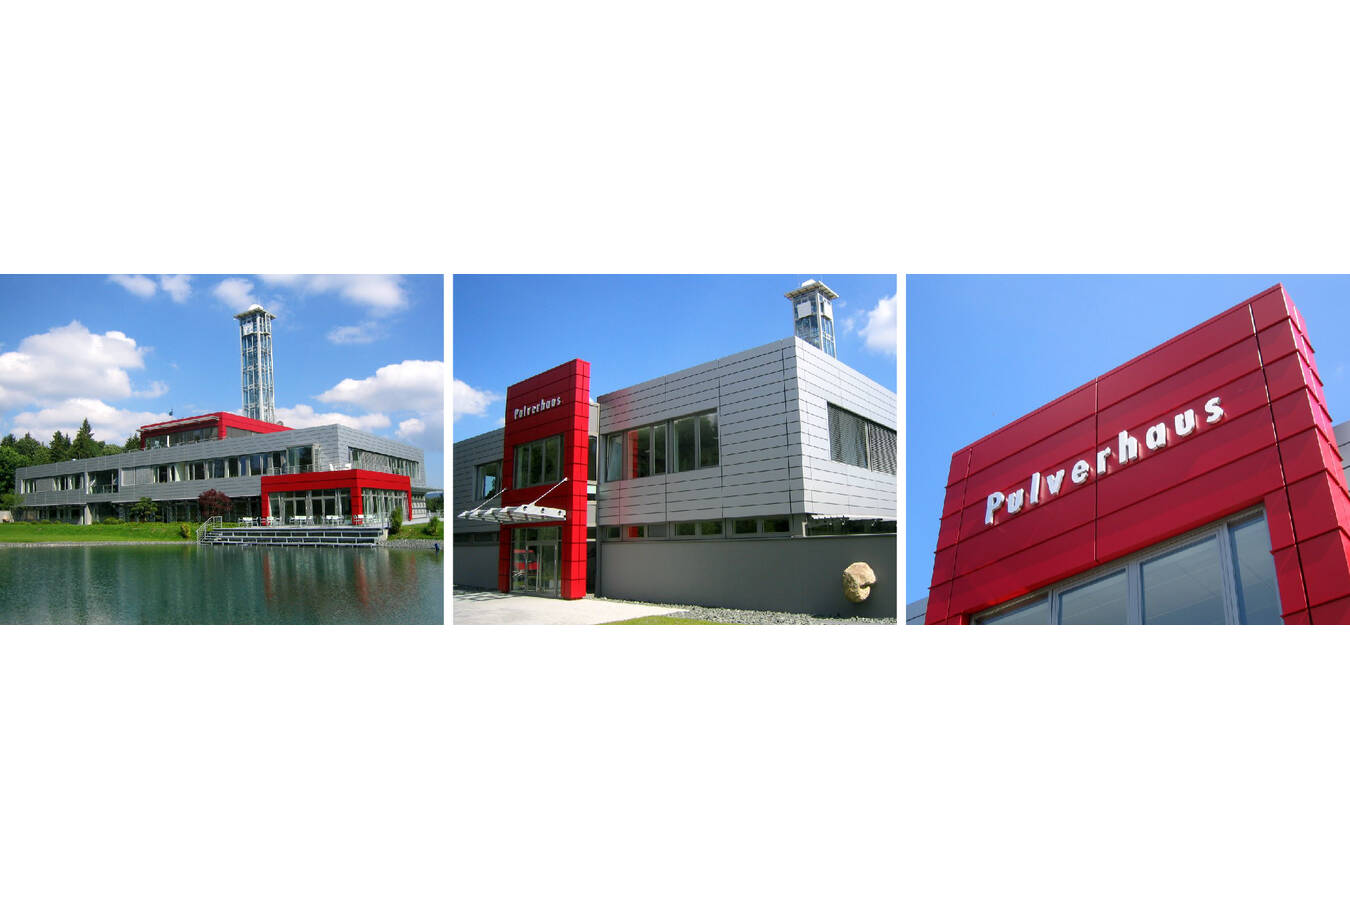 Sympatec GmbH sucht Sachbearbeiter Auftragsabwicklung (m/w/d) Für unsere Firmenzentrale „Pulverhaus“ in Clausthal-Zellerfeld suchen wir zum nächstmöglichen Zeitpunkt einen Sachbearbeiter Auftragsabwicklung (m/w/d).